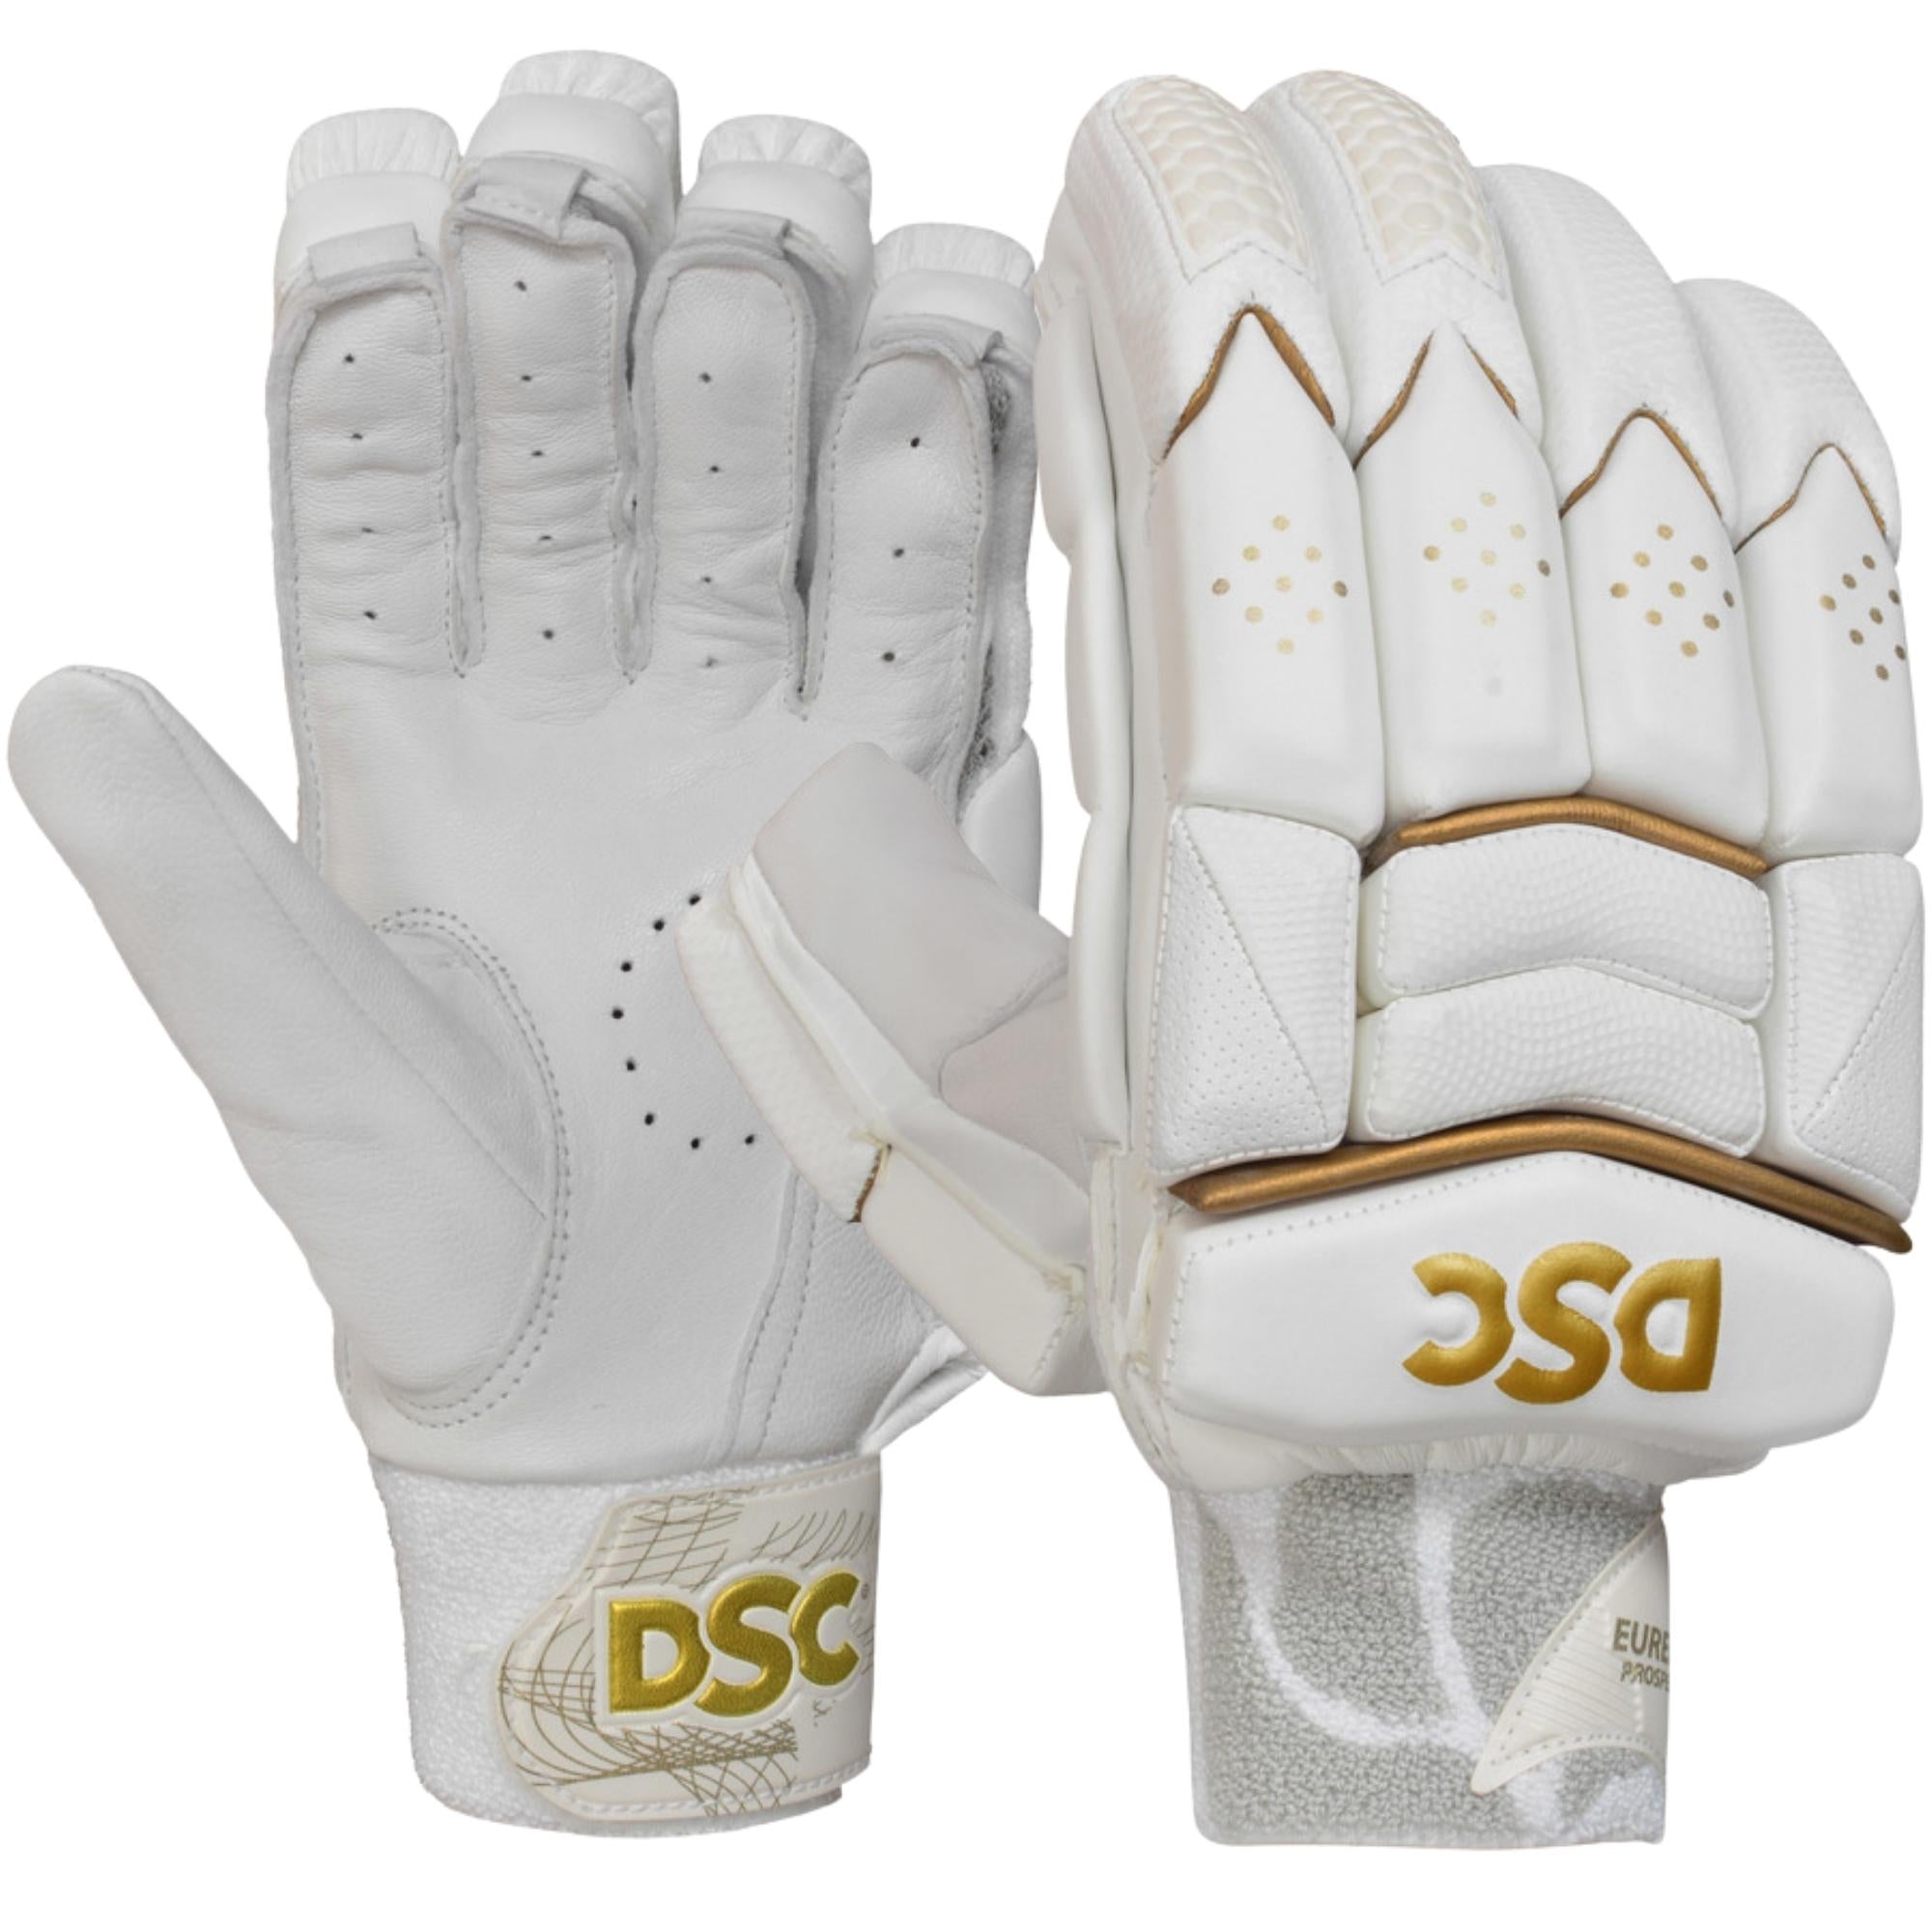 DSC Batting Gloves Eureka Prospect